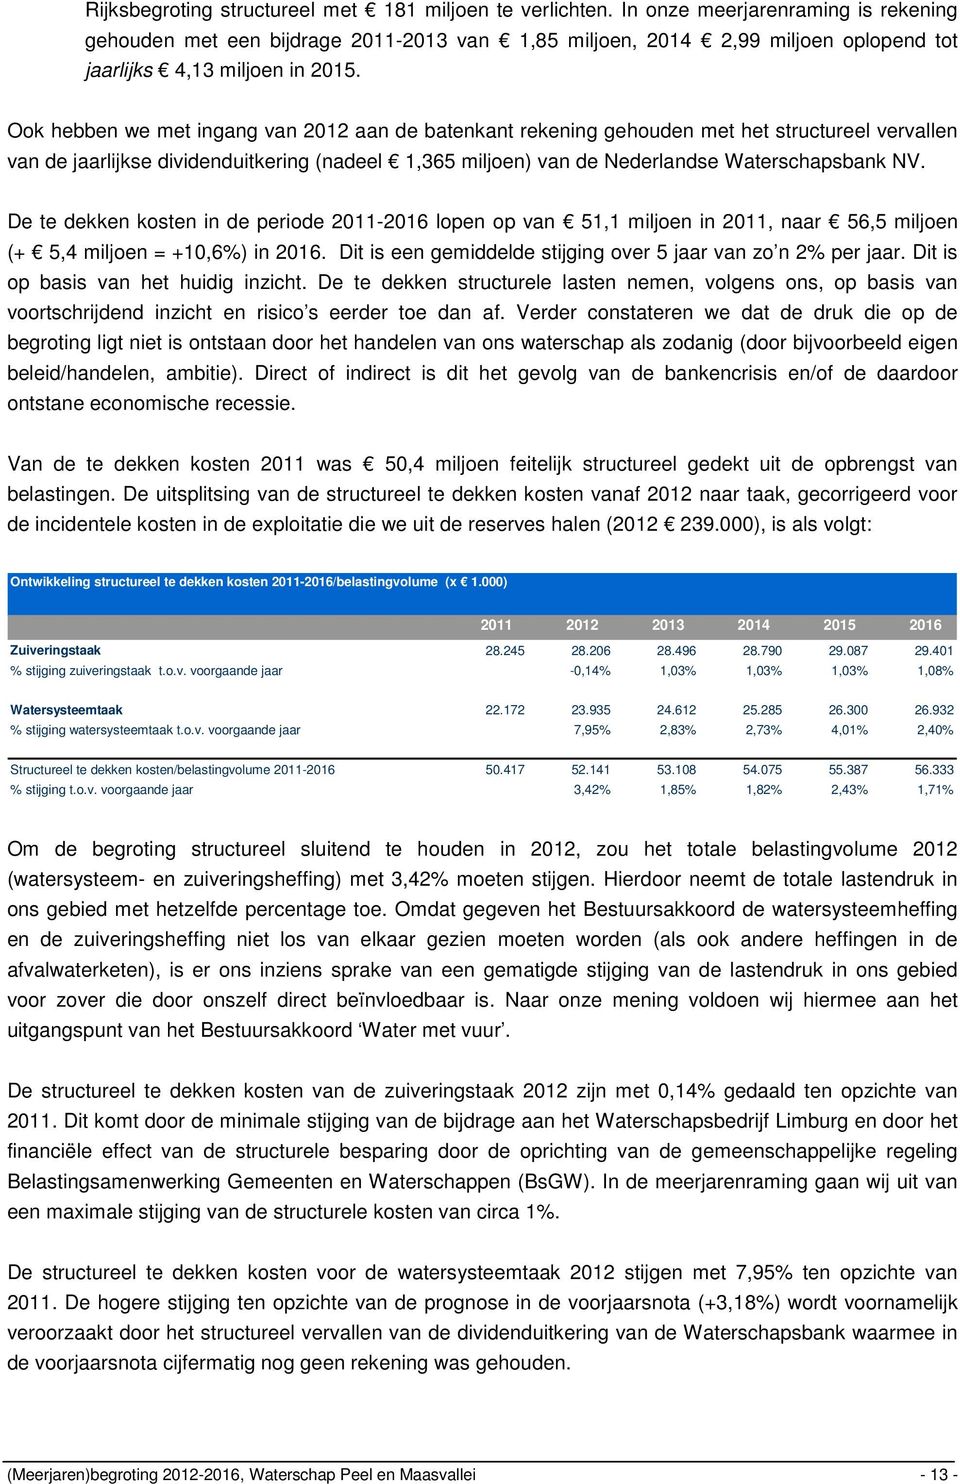 Ook hebben we met ingang van 2012 aan de batenkant rekening gehouden met het structureel vervallen van de jaarlijkse dividenduitkering (nadeel 1,365 miljoen) van de Nederlandse Waterschapsbank NV.